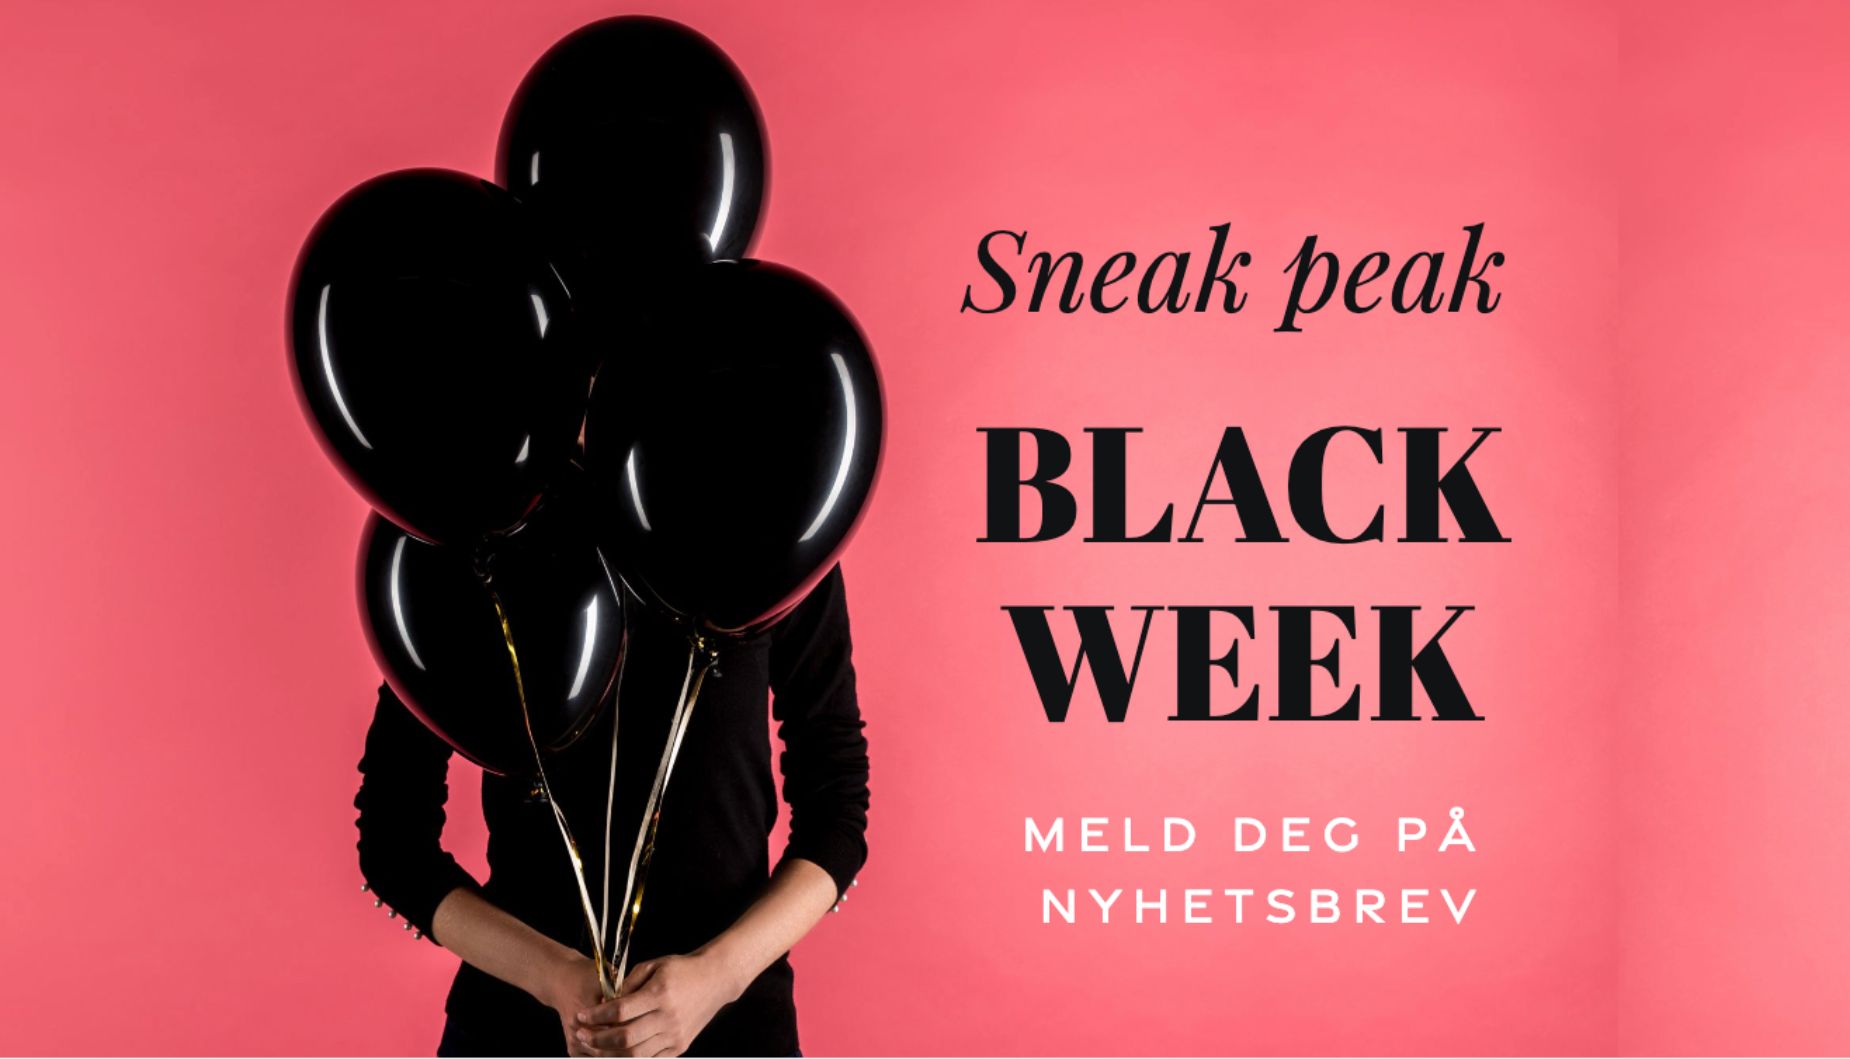 Sneak Peak Black Week nyhetsbrev